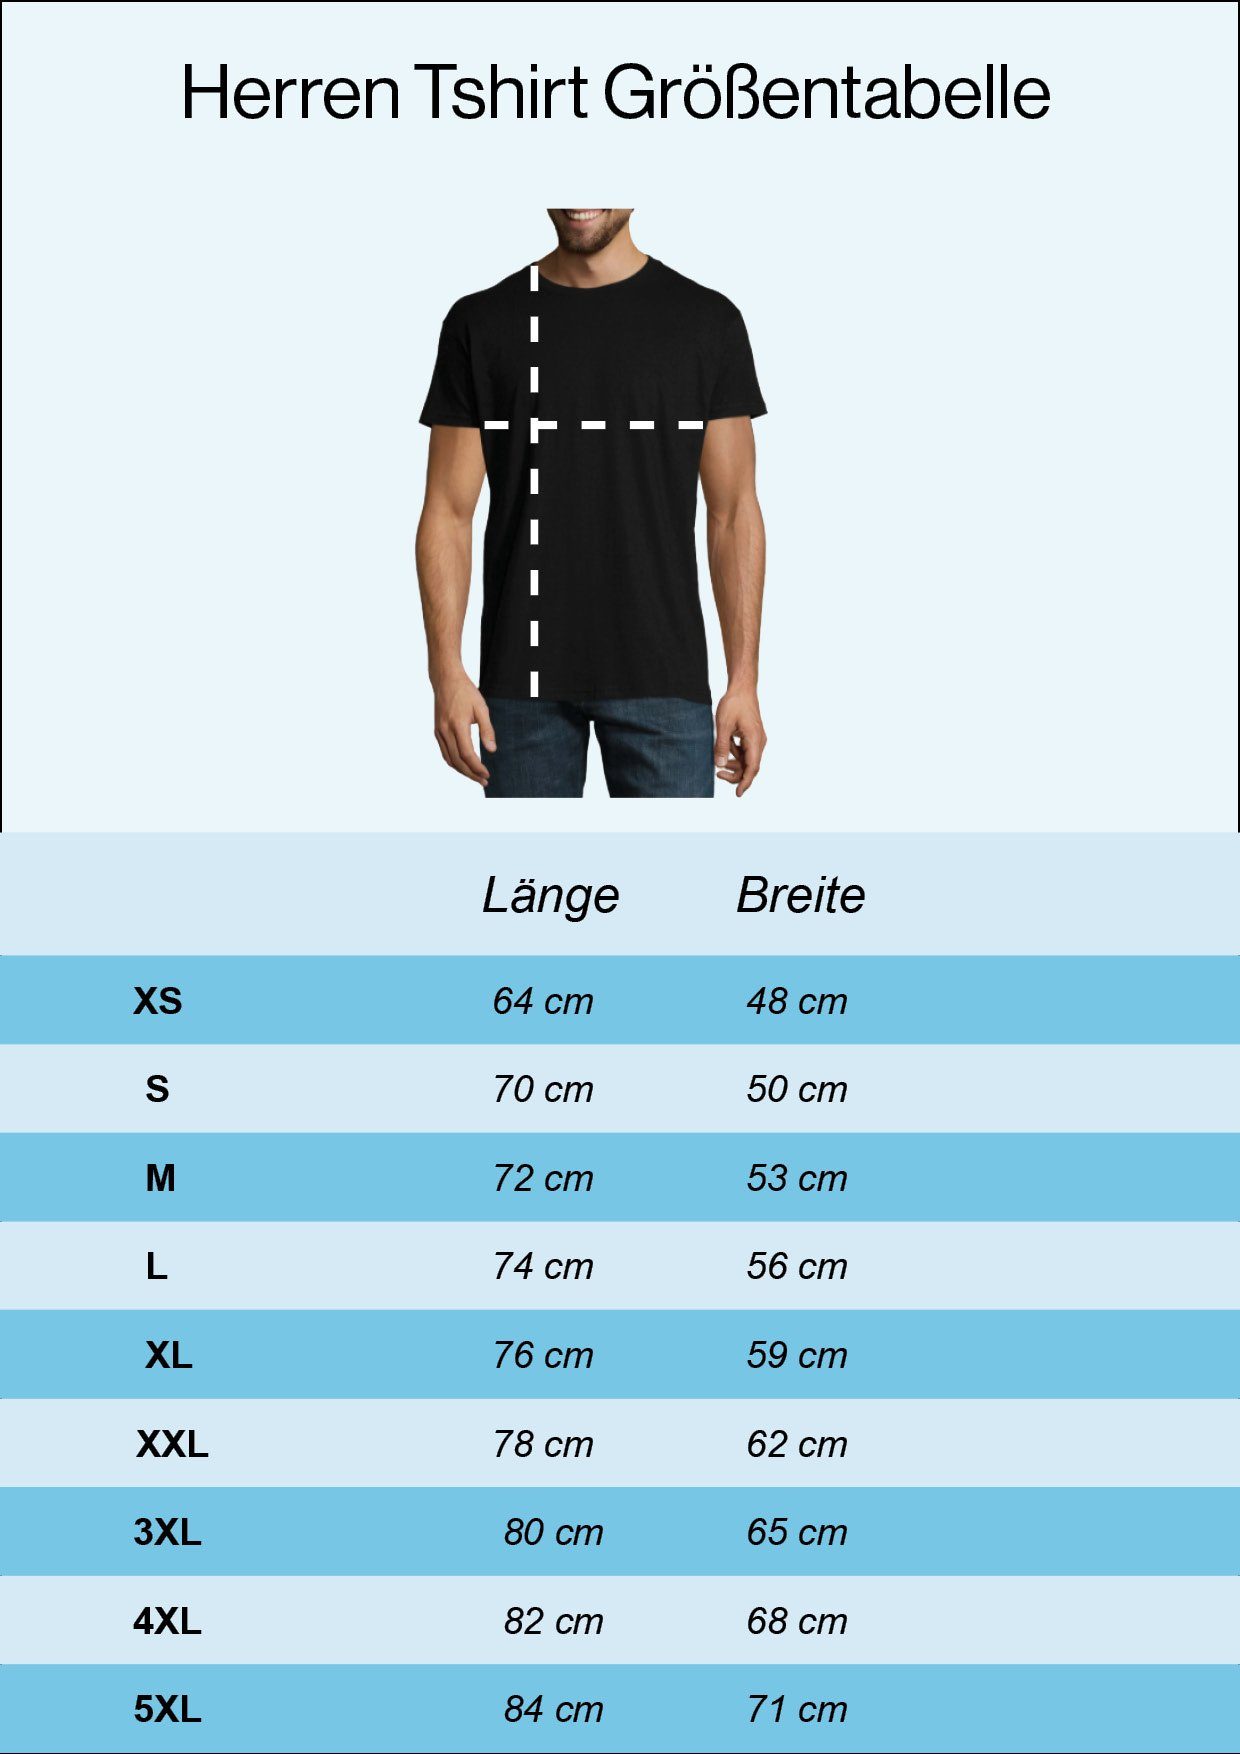 Designz trendigem Zweitakt Navyblau Die Frontprint Herren Für T-Shirt Shirt Youth mit Ewigkeit